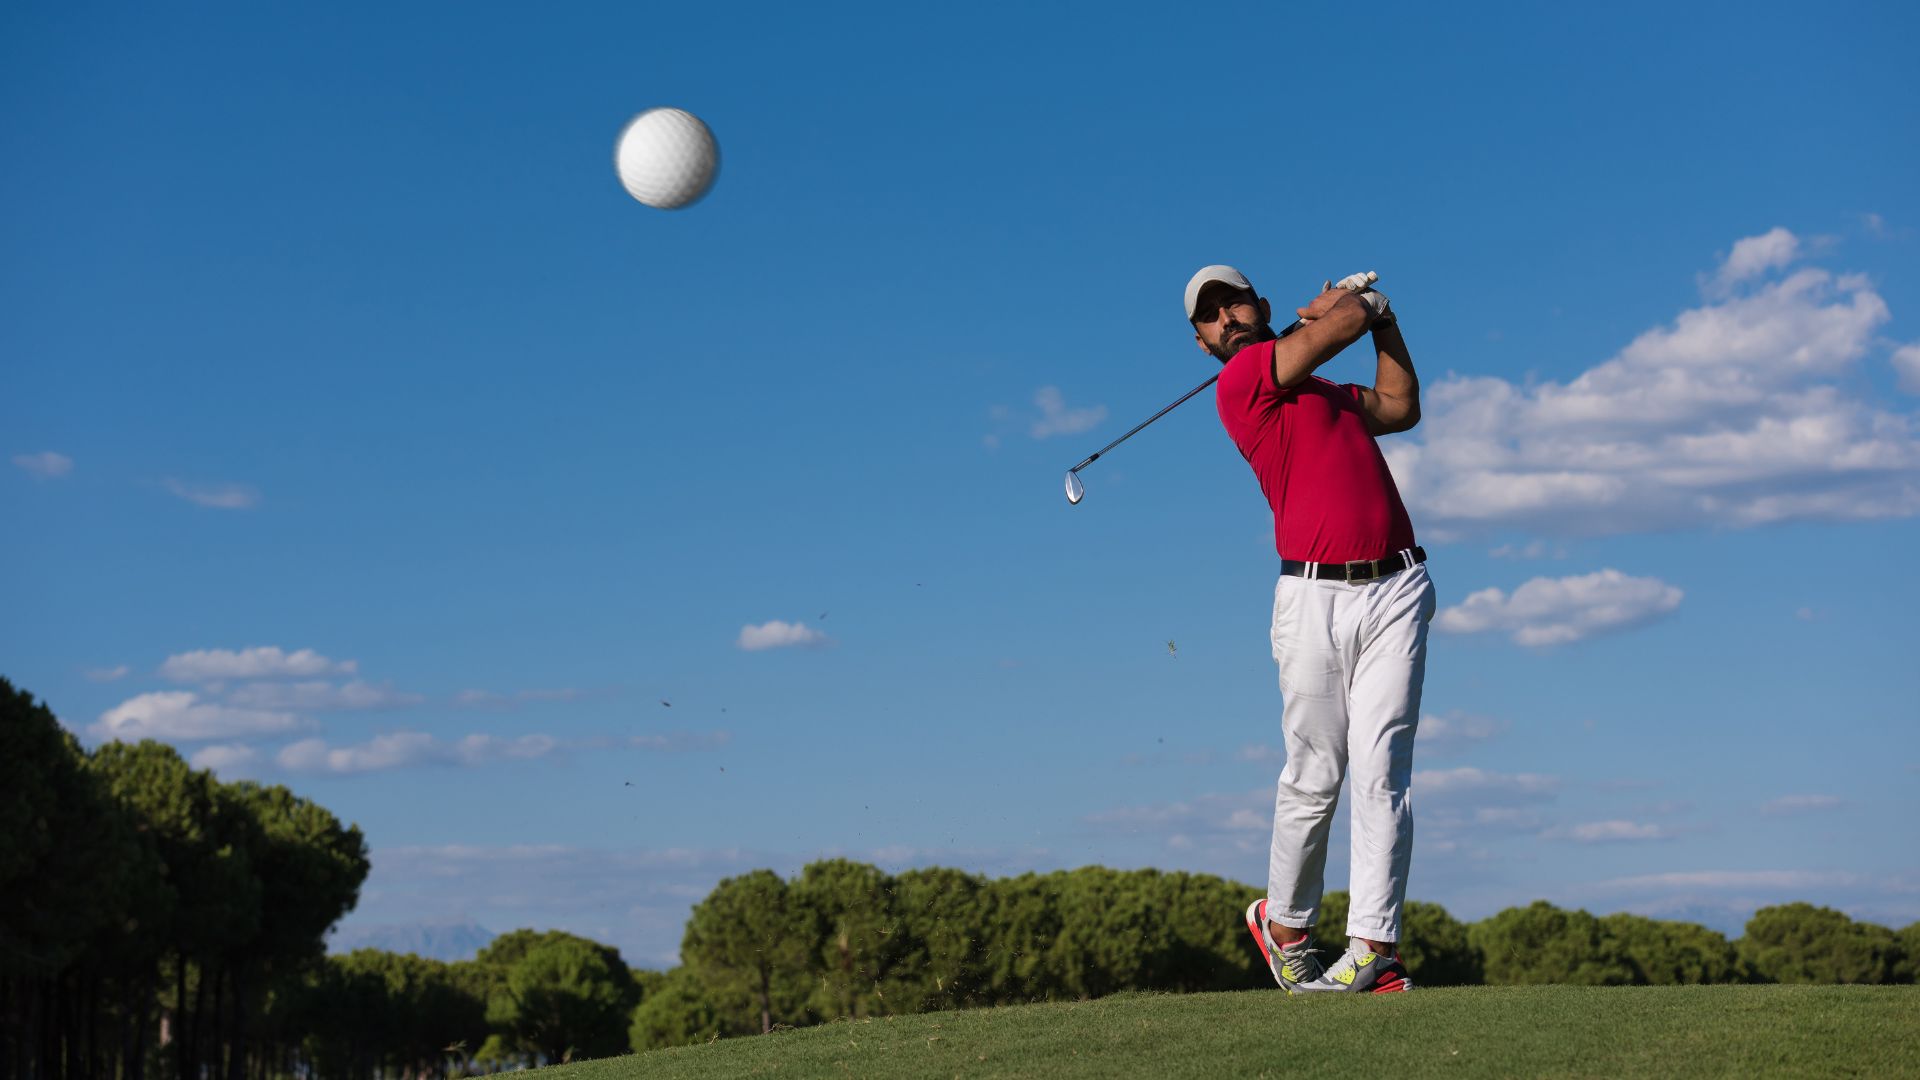 Obtenez le meilleur site de e-commerce pour votre club de Golf